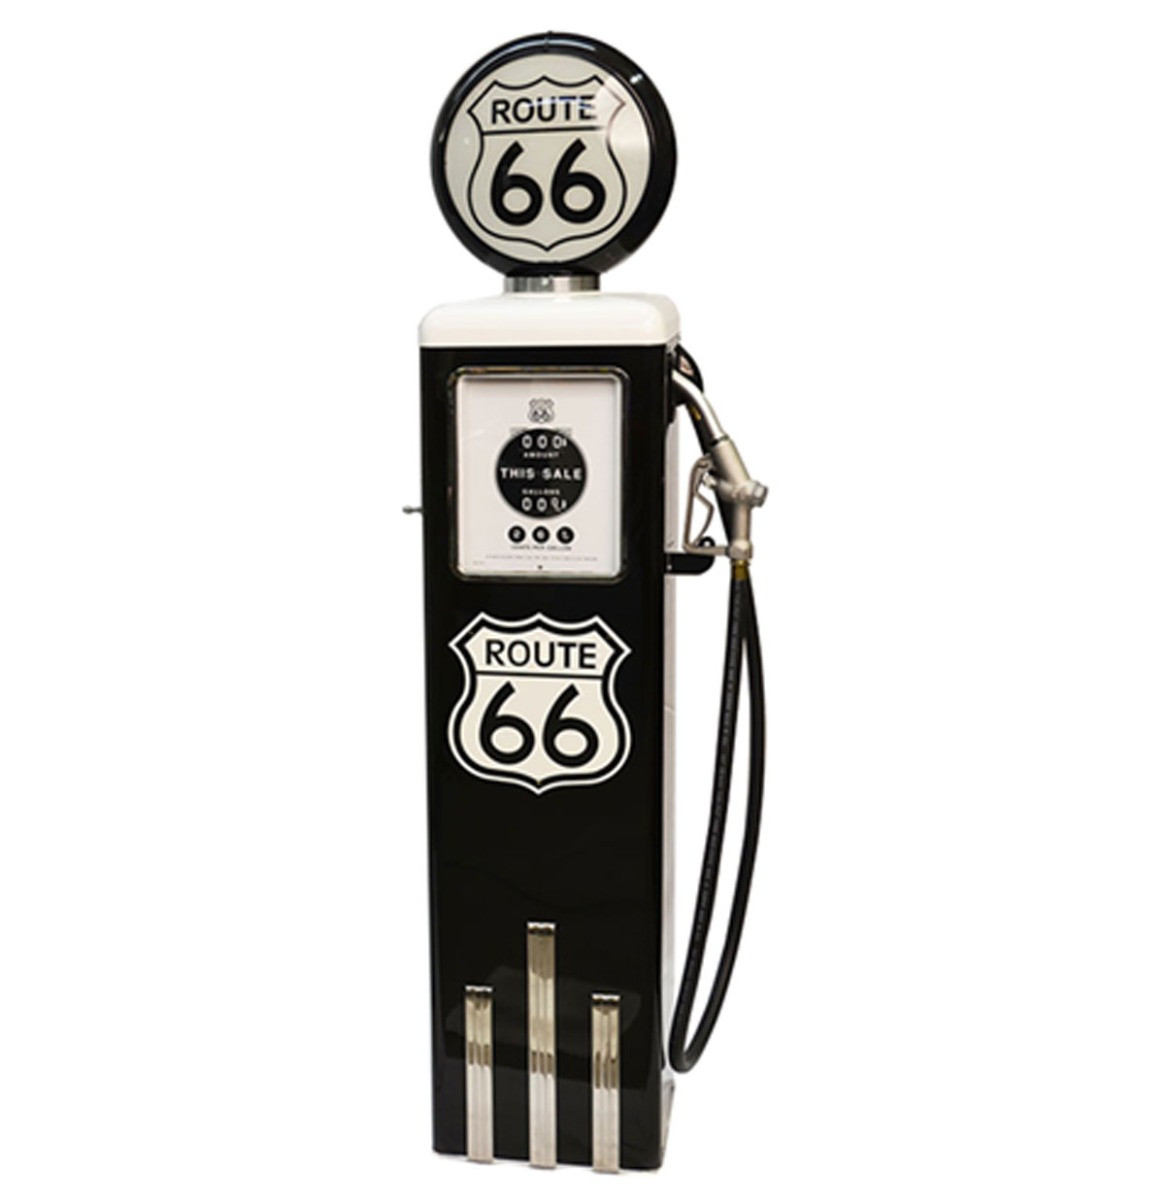 Route 66 8 Ball Elektrische Benzinepomp Zonder Voet - Zwart & Wit - Reproductie